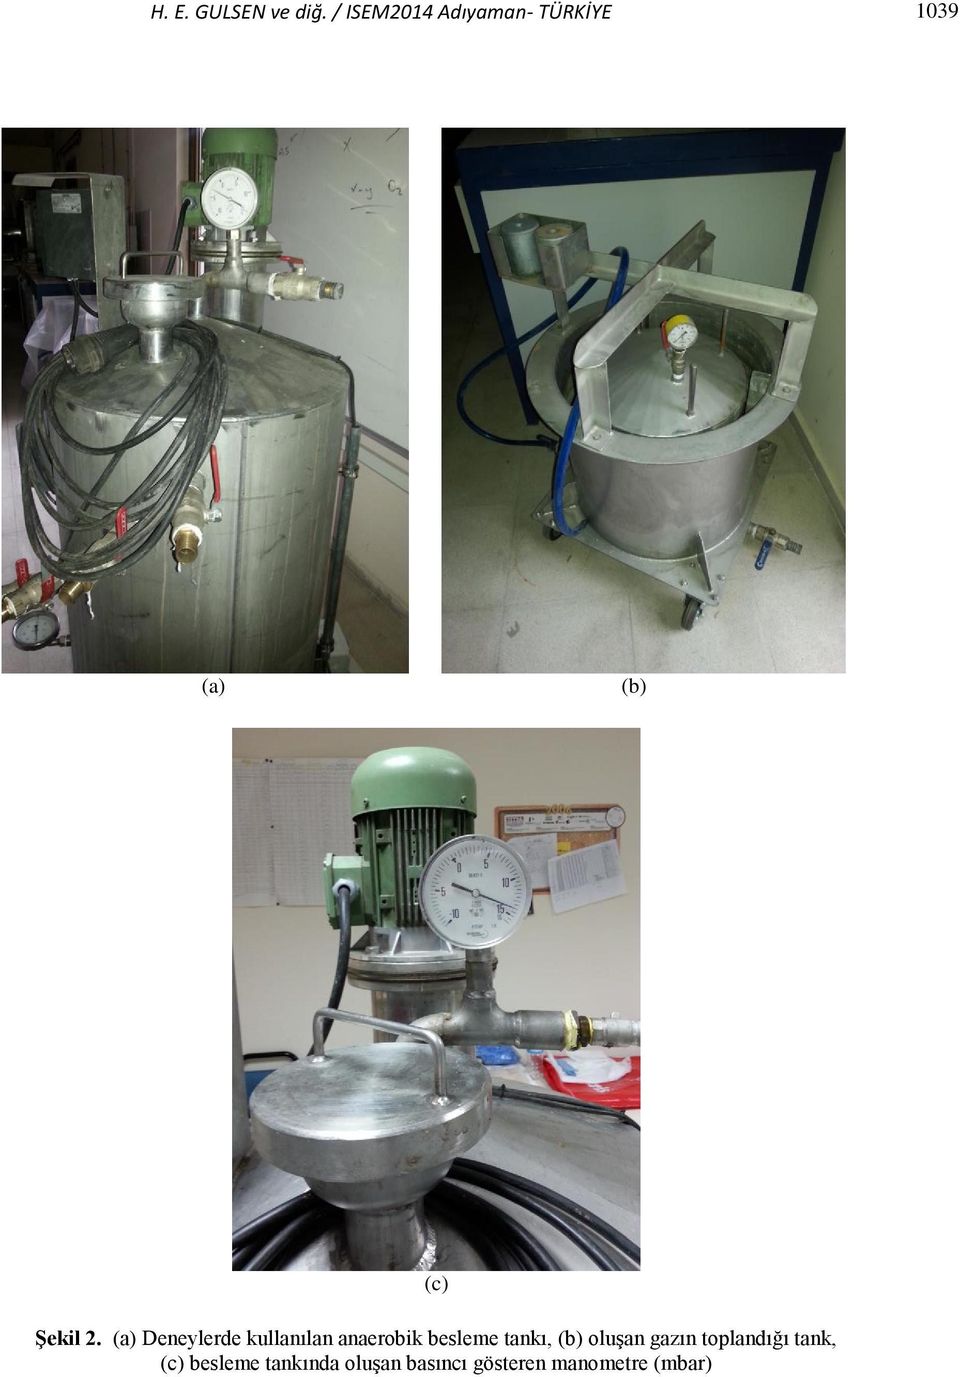 (a) Deneylerde kullanılan anaerobik besleme tankı, (b)